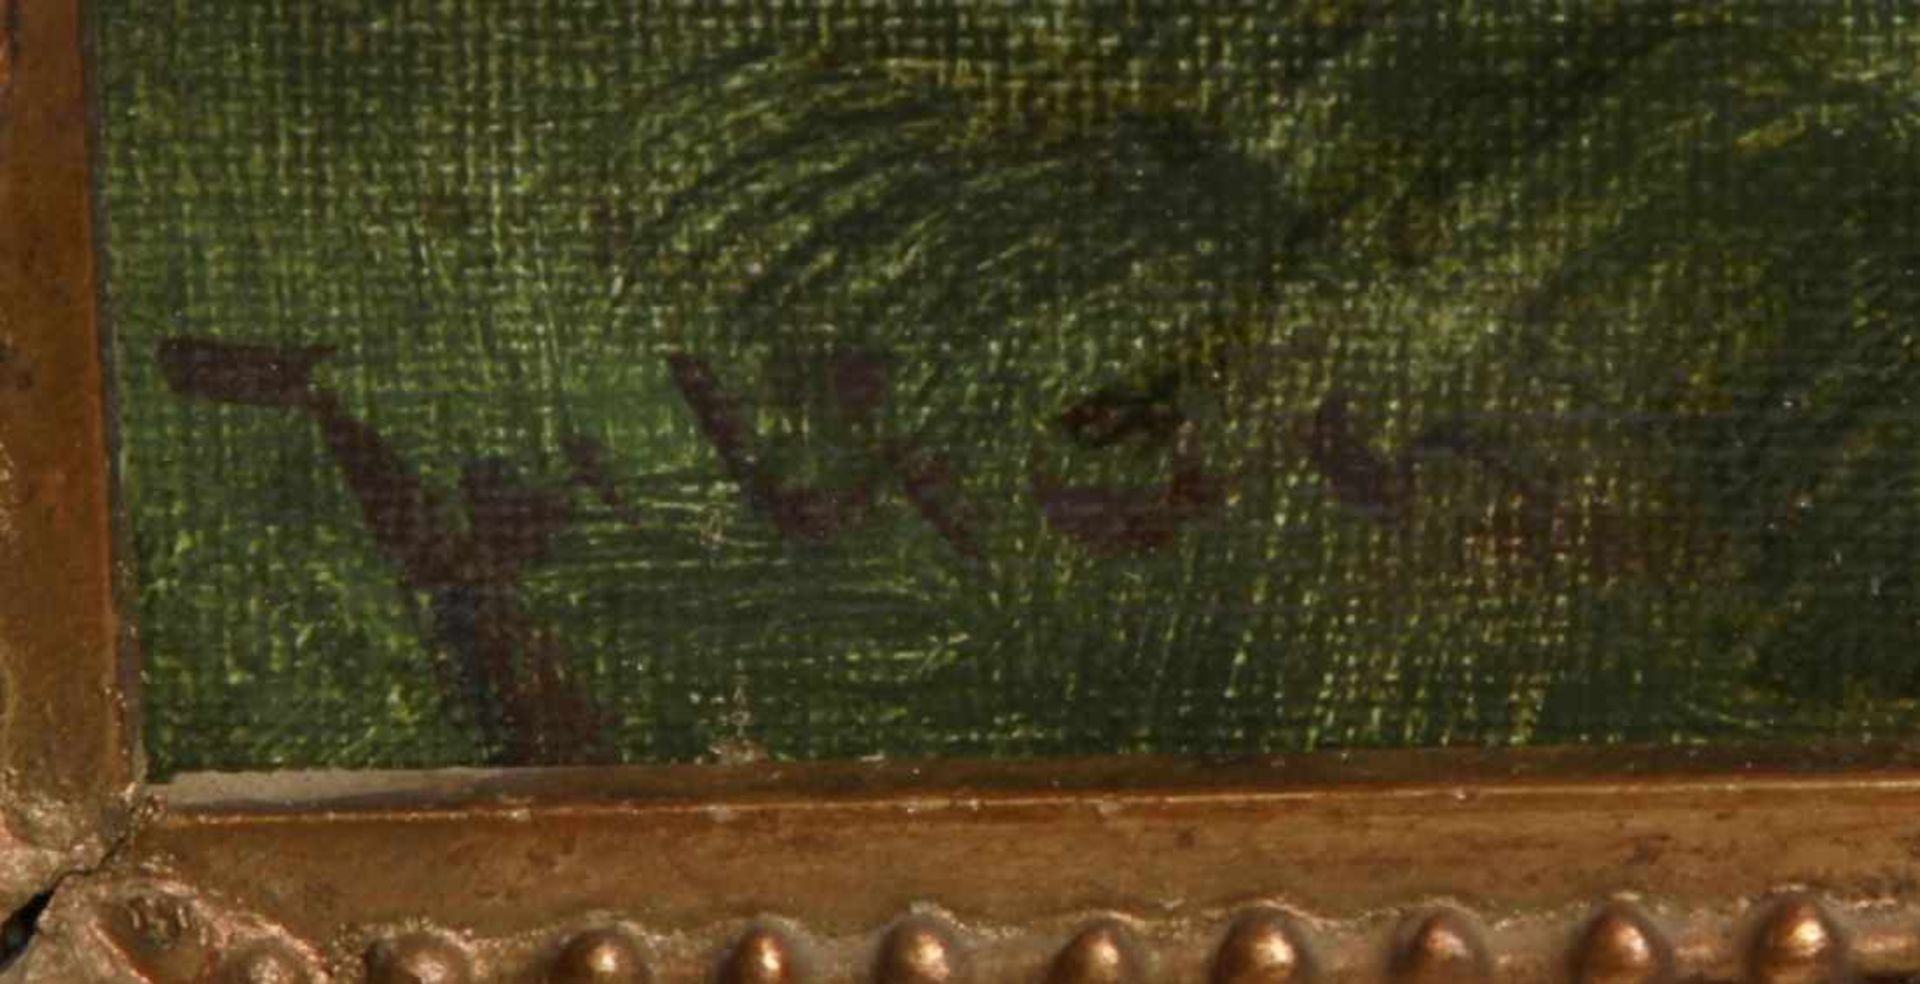 Julian, Maler Mitte 20. Jh. "Landschaft mit Schafherde", sign., Öl/Lw., 46 x 60 cm- - -20.00 % - Bild 2 aus 2